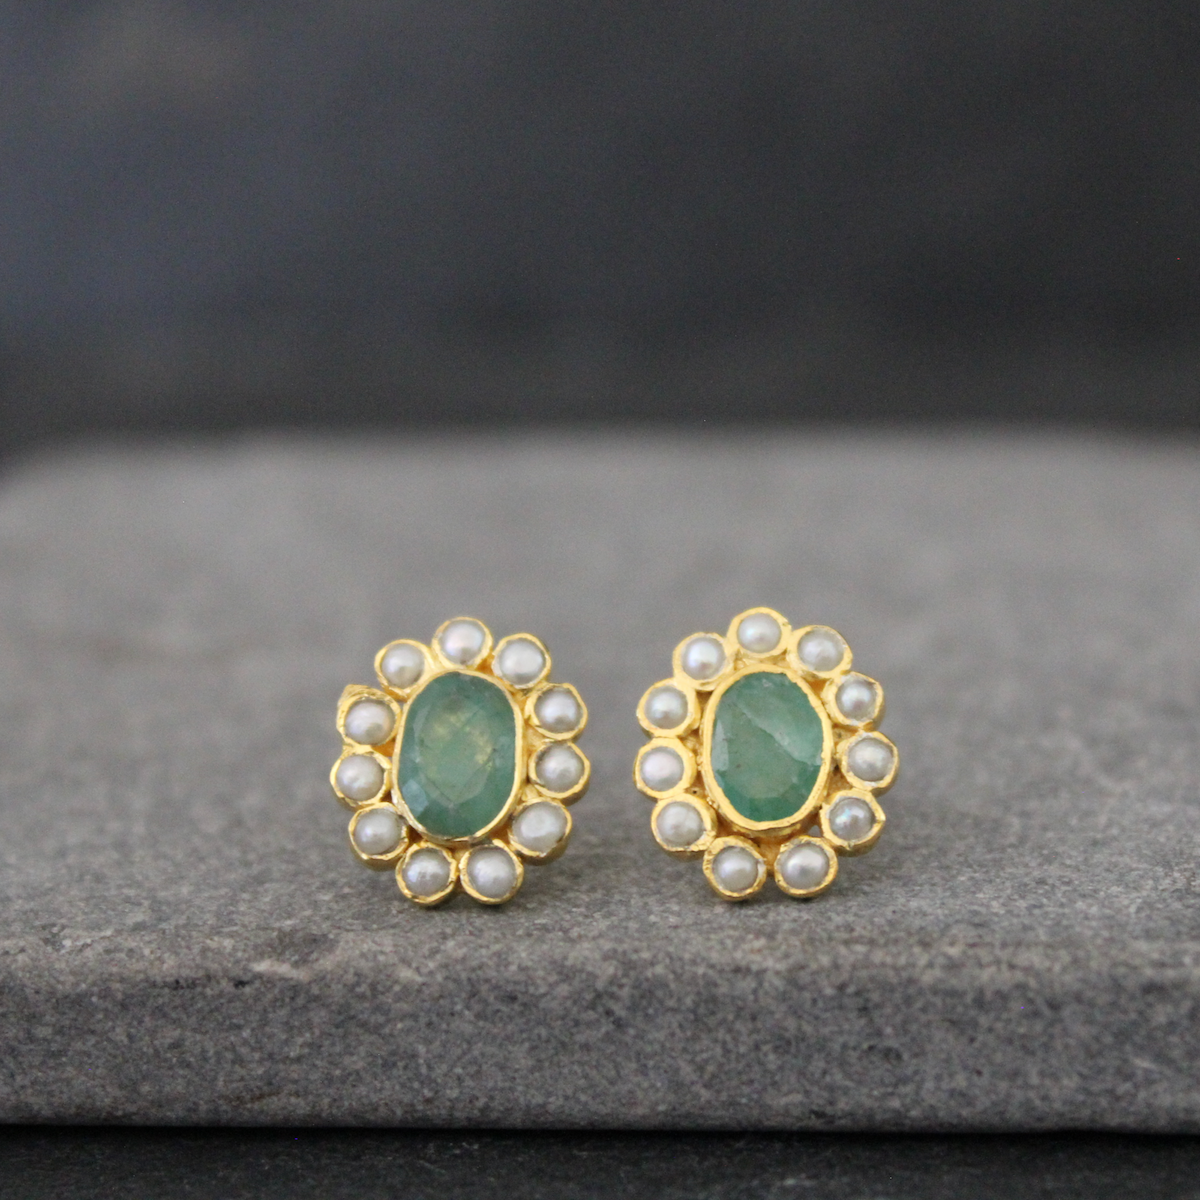 Emerald, Pearl and Gold Vermeil Stud Earrings - Beyond Biasa